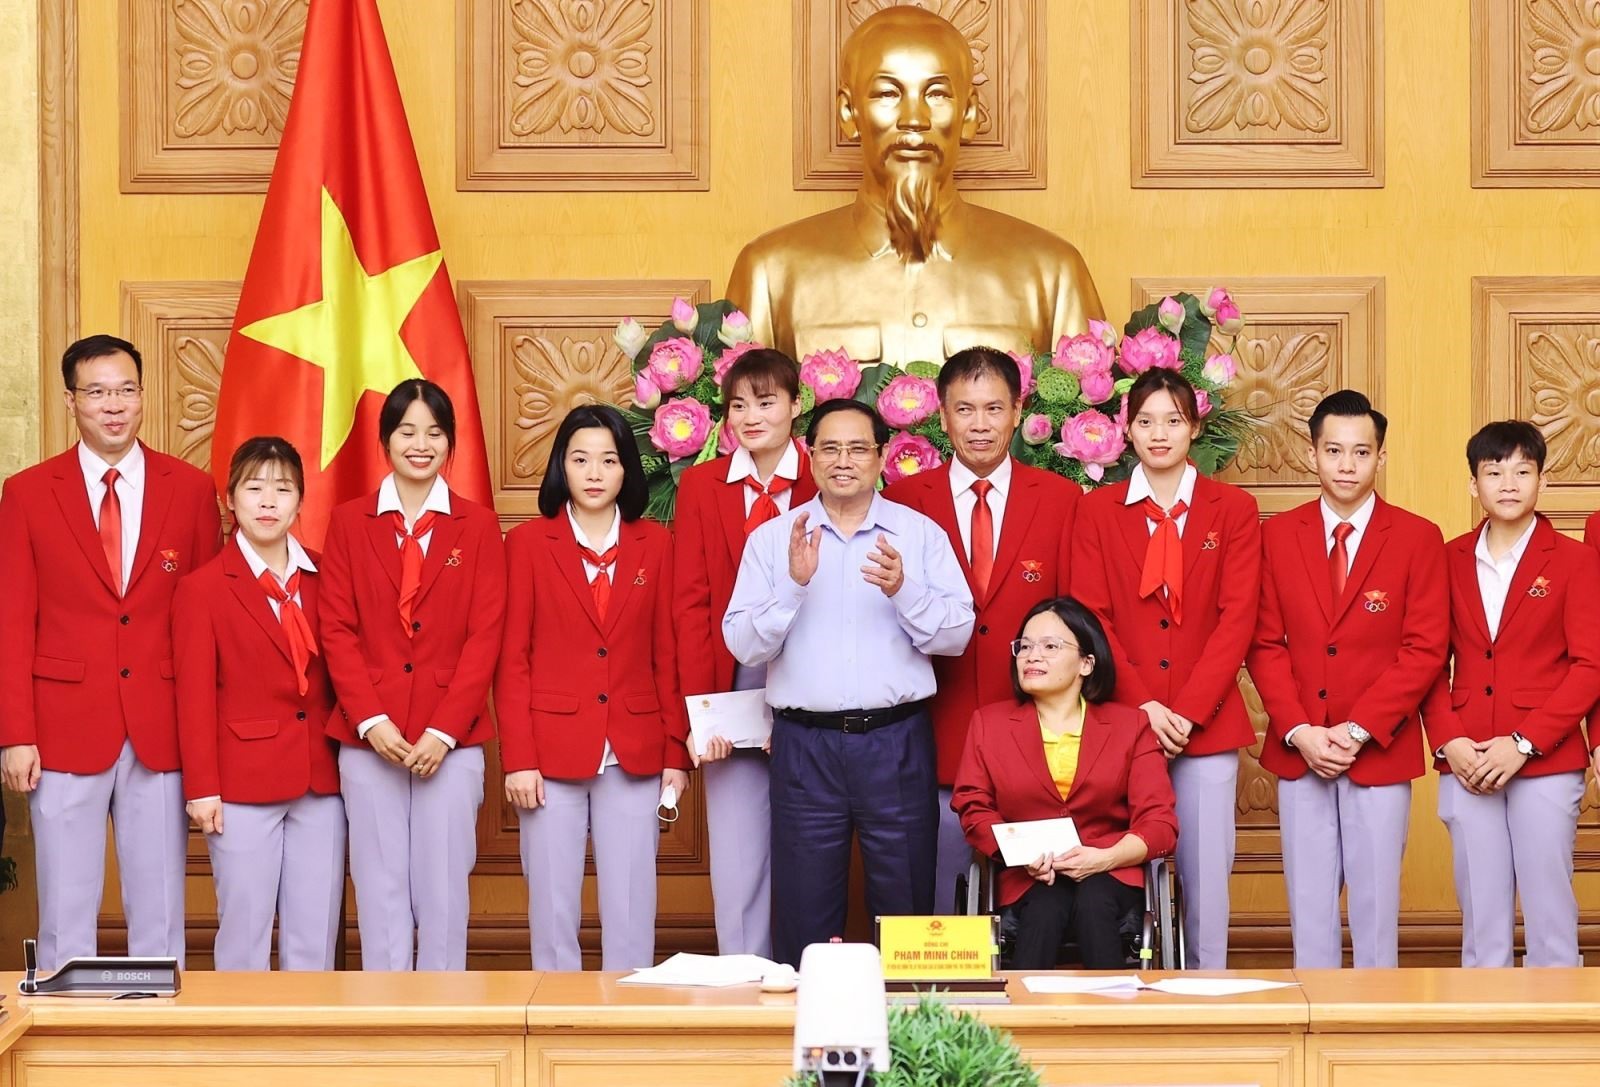 Thủ tướng Phạm Minh Chính tặng quà cho các vận động viên, huấn luyện viên Đoàn Thể thao Việt Nam và đại diện Đoàn Thể thao Người khuyết tật Việt Nam tham dự Olympic và Paralympic Tokyo 2020 tại Nhật Bản.